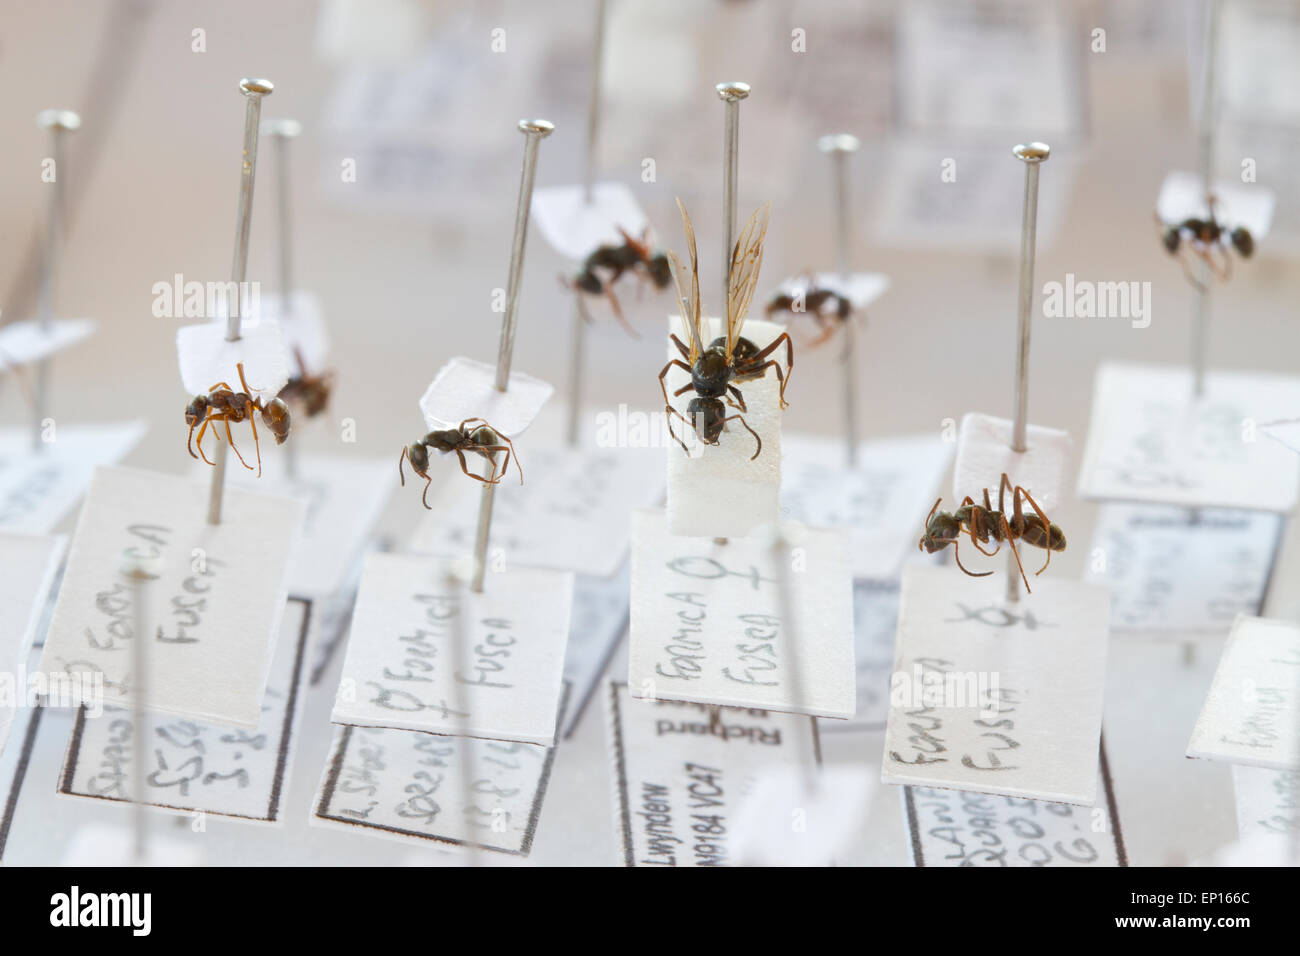 Spécimens de Ant (Formica fusca) dans une collection de référence de fourmis britanniques.Powys, pays de Galles. Banque D'Images